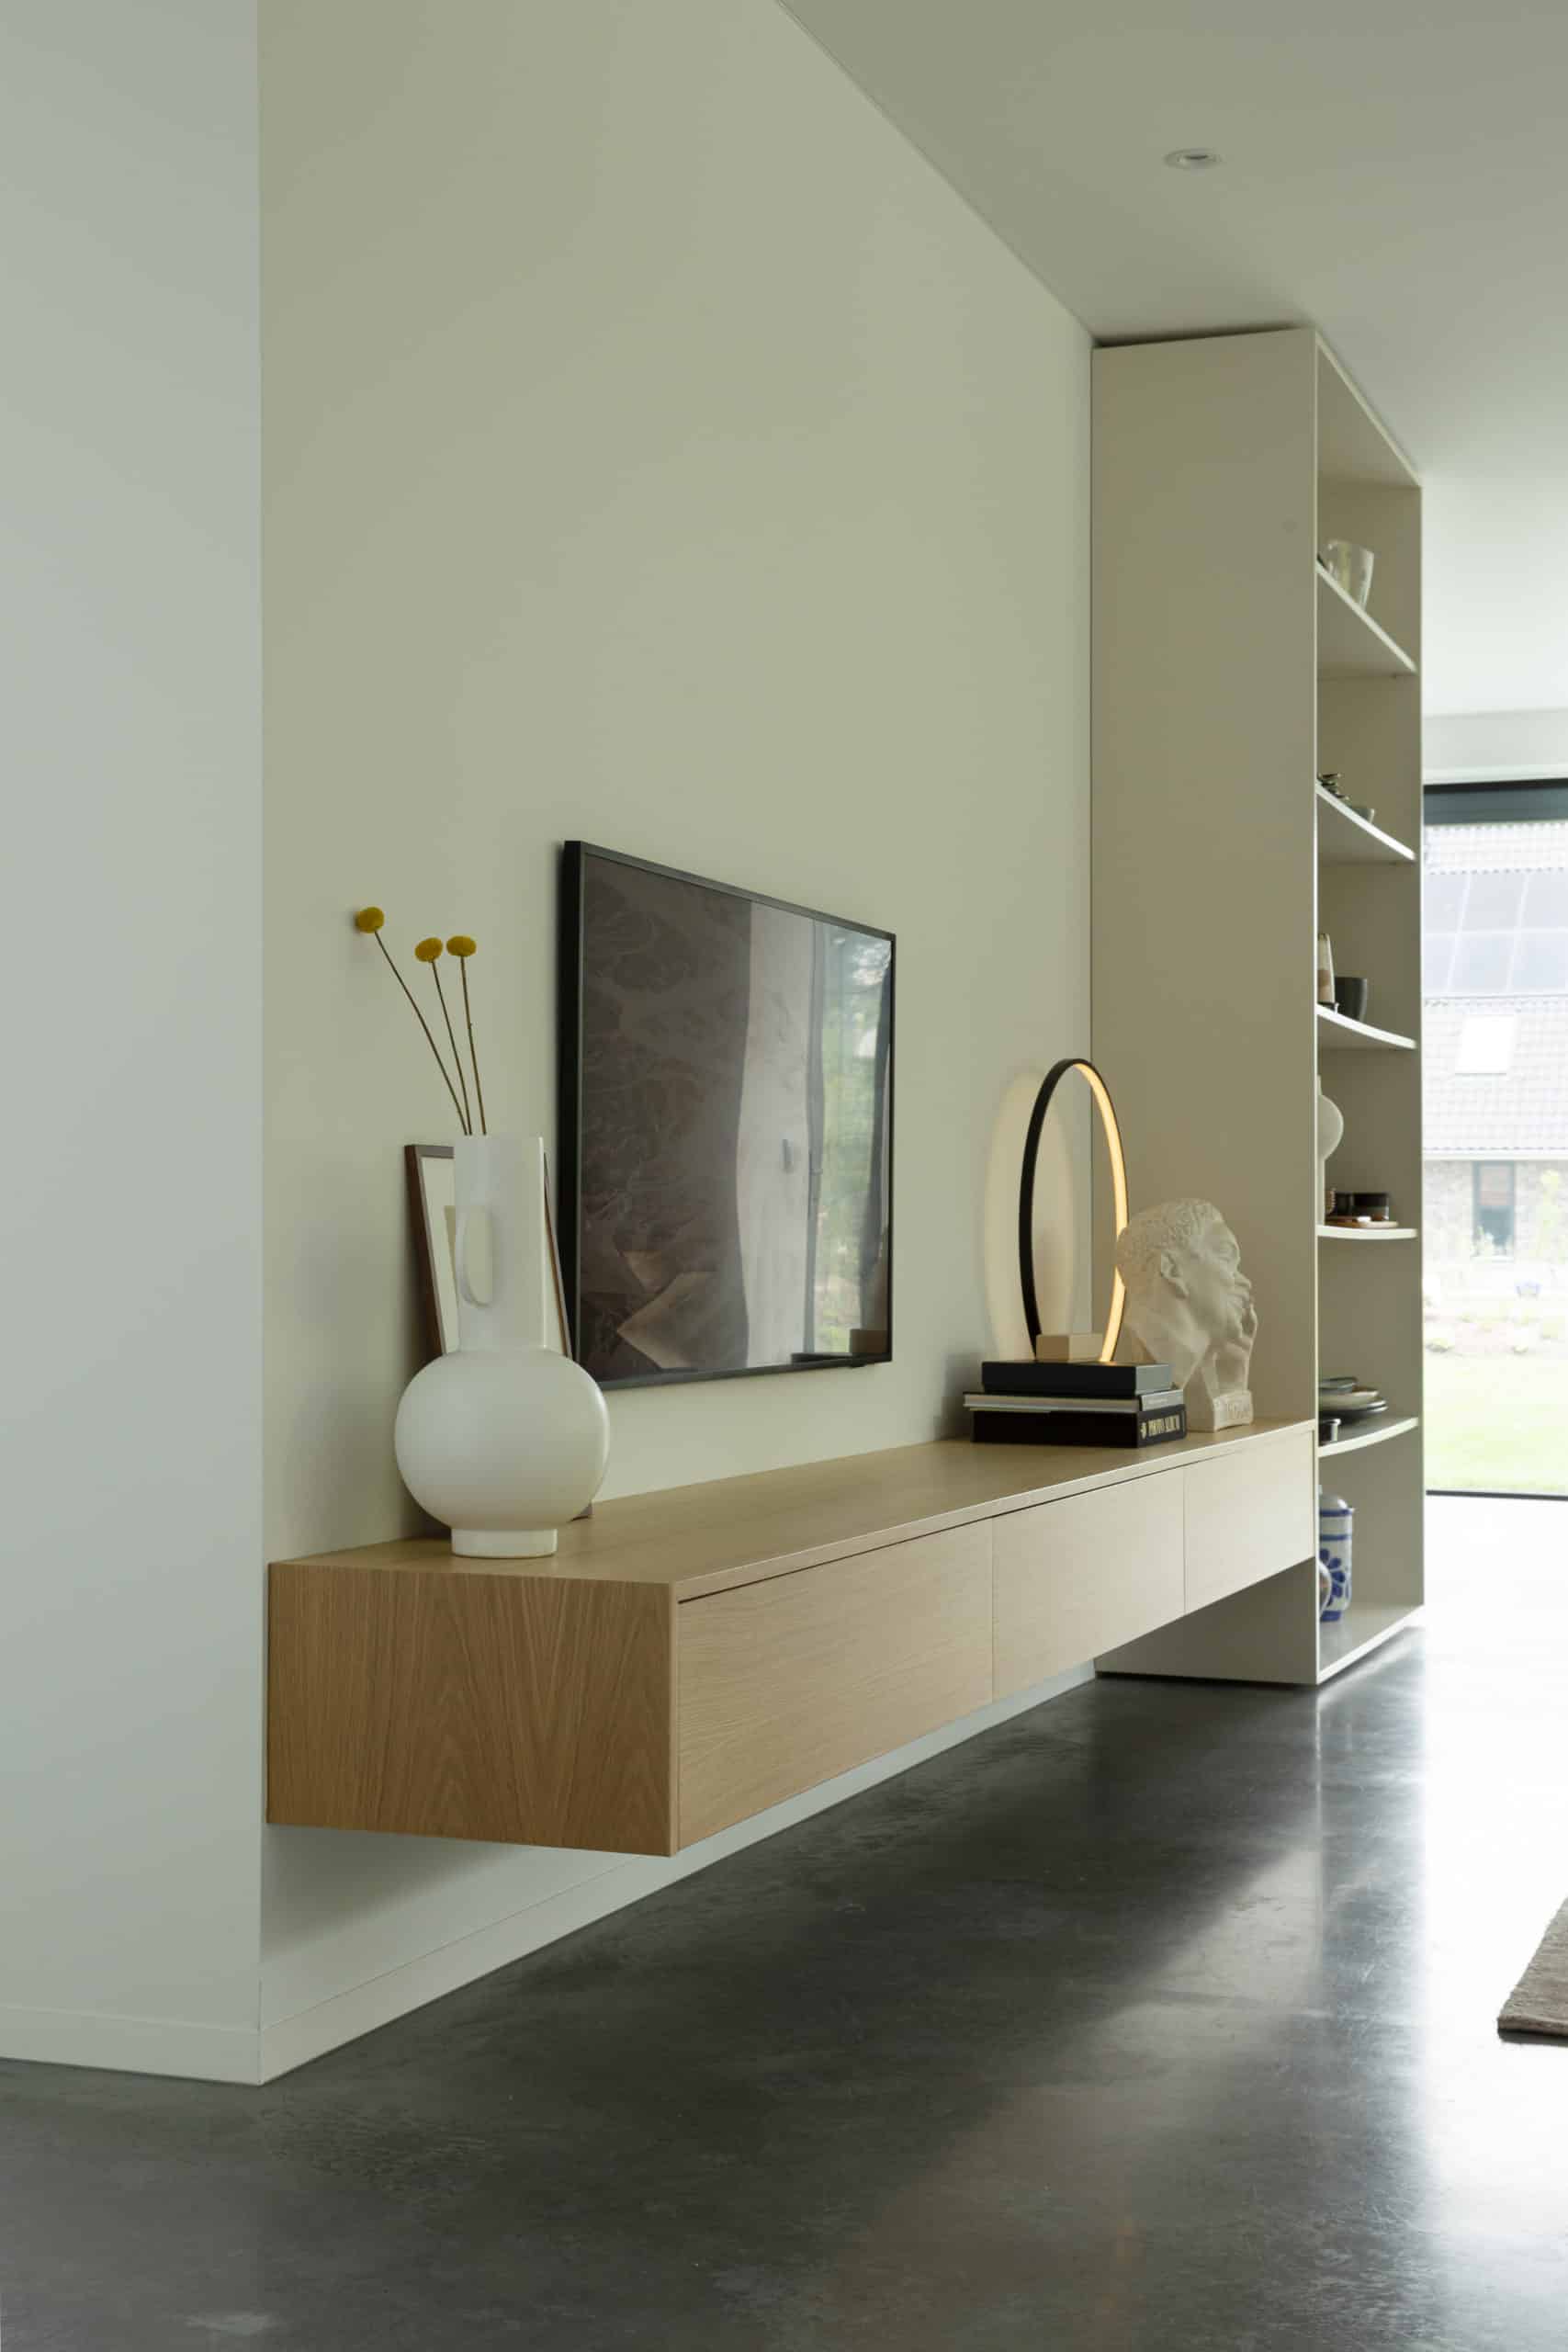 Gevlinderde betonvloer in de woonkamer in Harderwijk. Gecombineerd met een houten tv meubel en witte accesoires